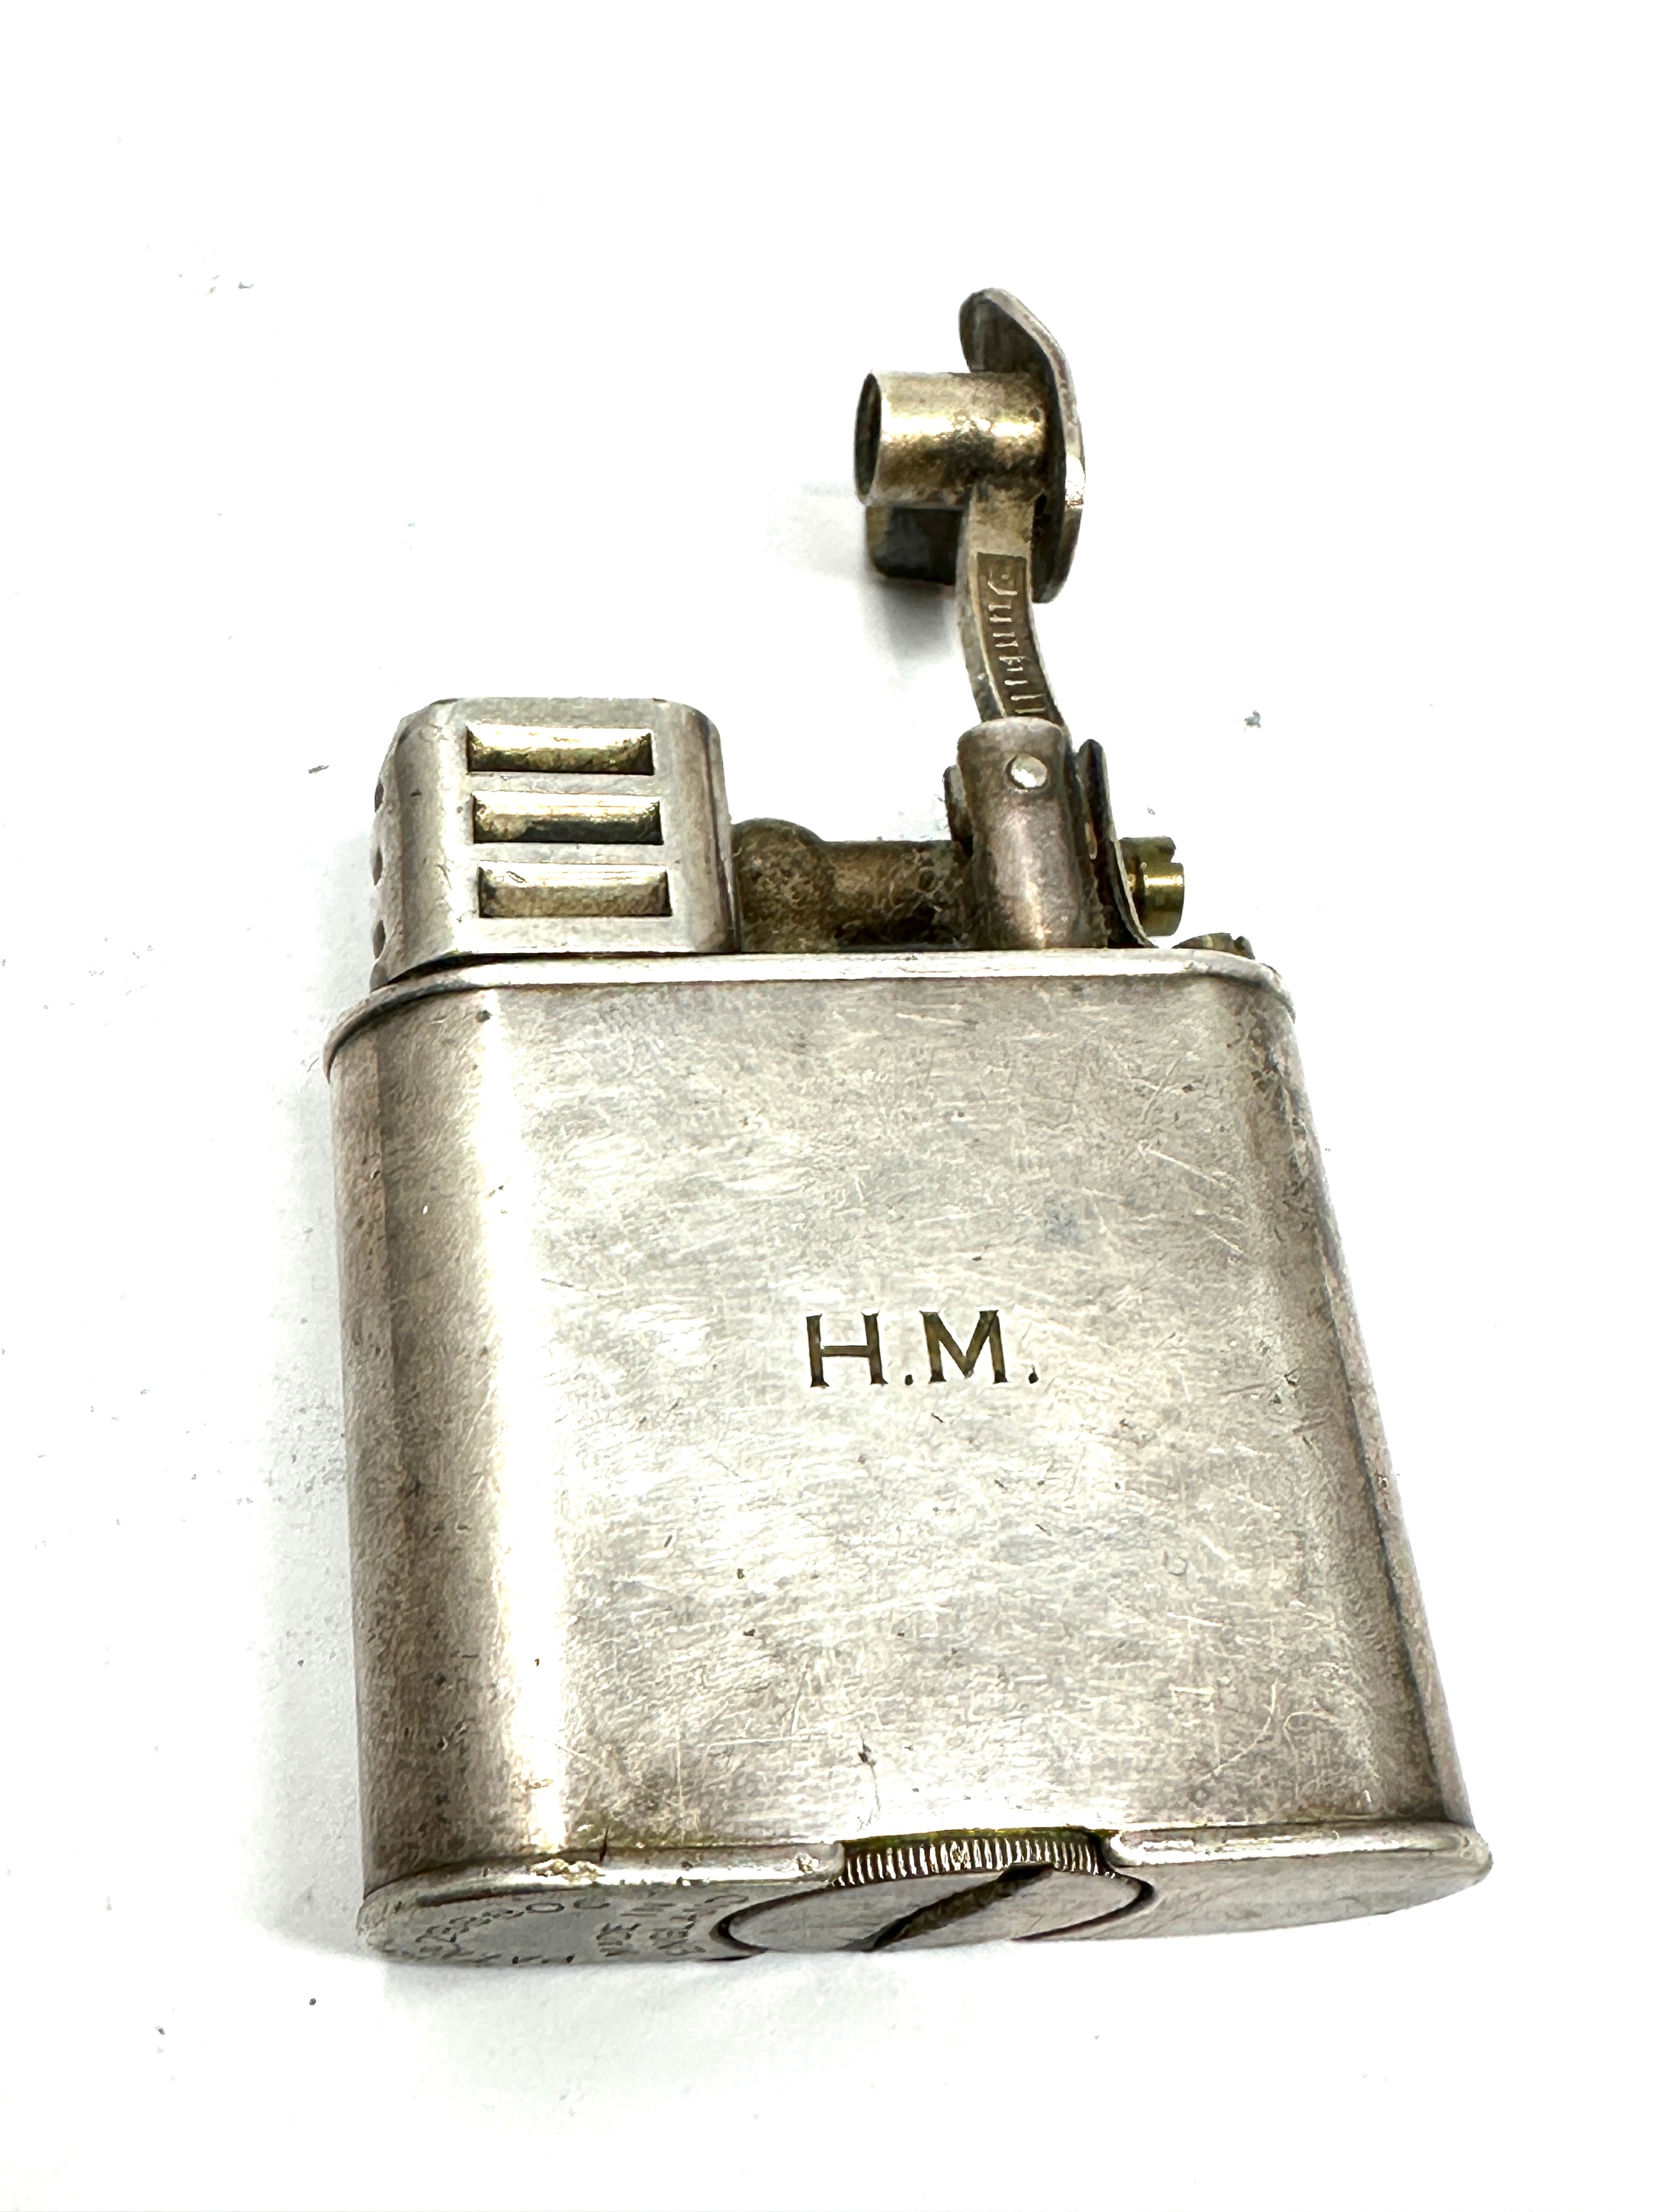 Vintage lift arm dunhill cigarette lighter - Image 3 of 4